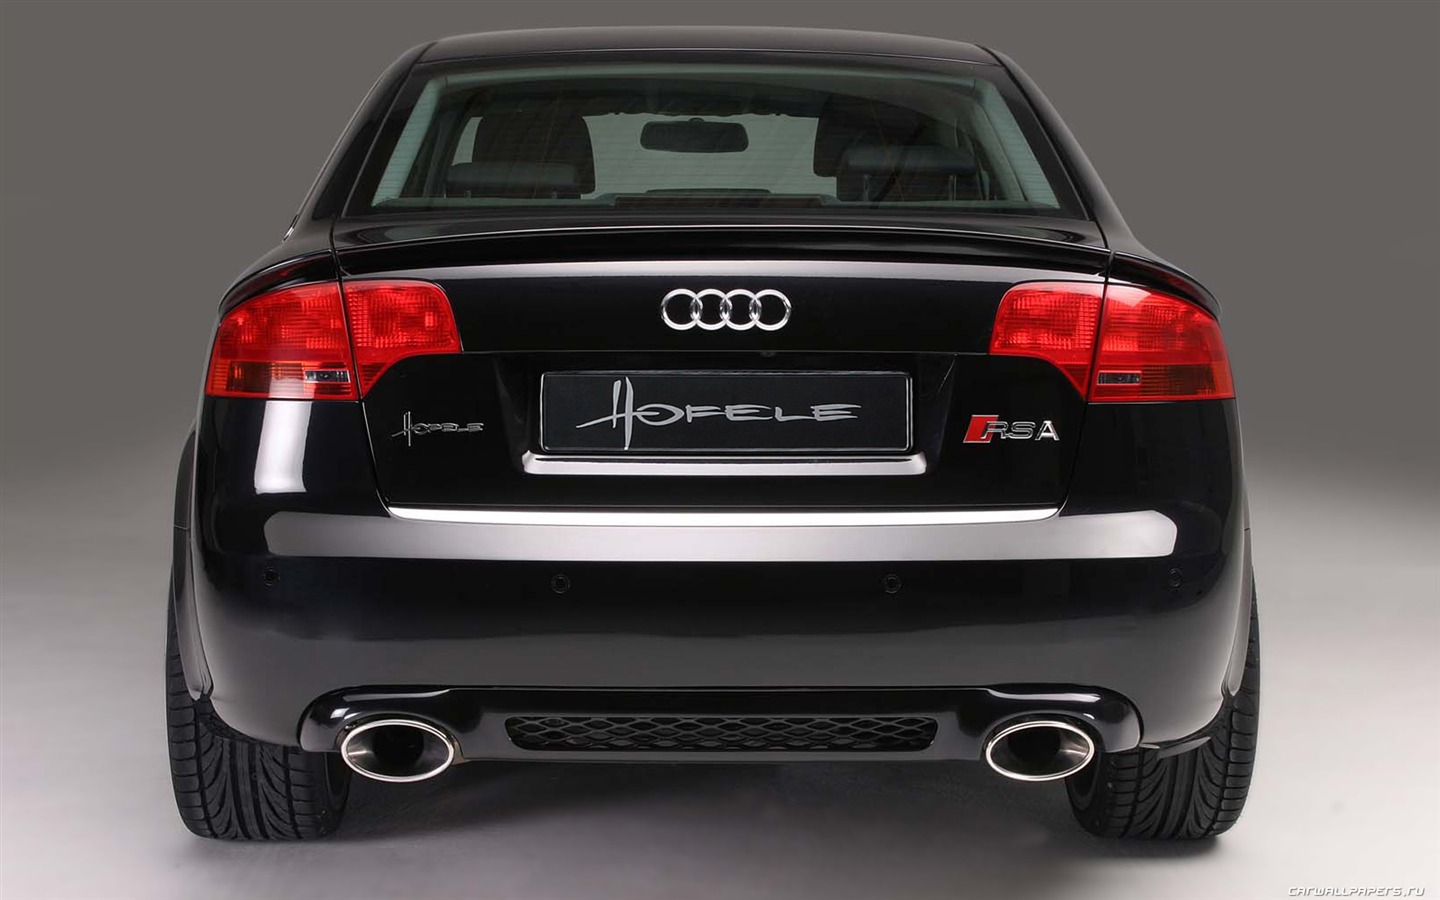 Hofele Audi A4 B6 B7 fondos de escritorio de alta definición #5 - 1440x900